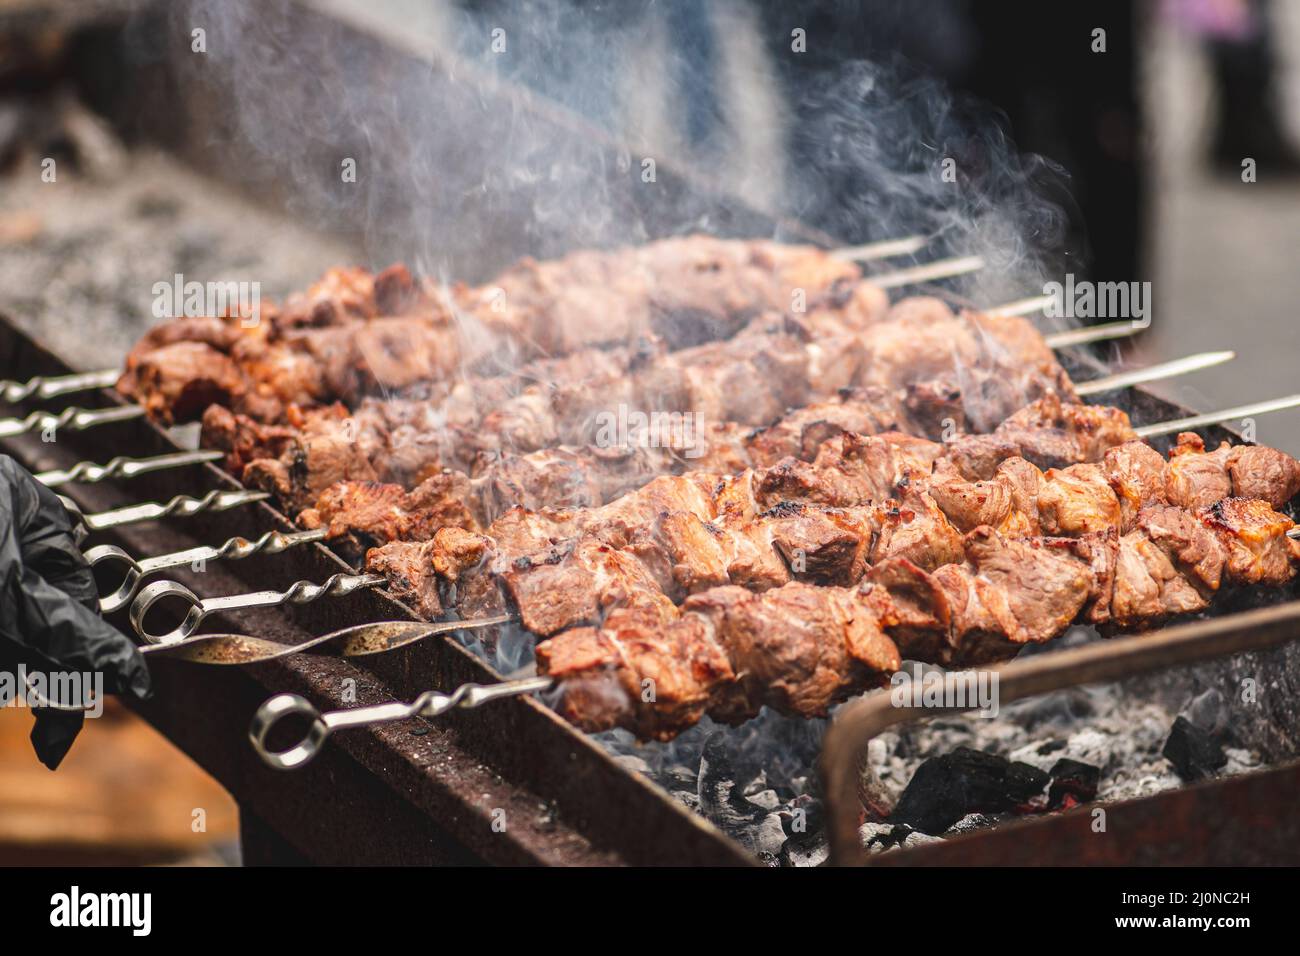 Spiedino di carne di maiale, grigliato o arrostito in un barbecue a fuoco aperto e fiamme, shashlik o shashlik per un pic-nic con pitchforks, primo piano Foto Stock